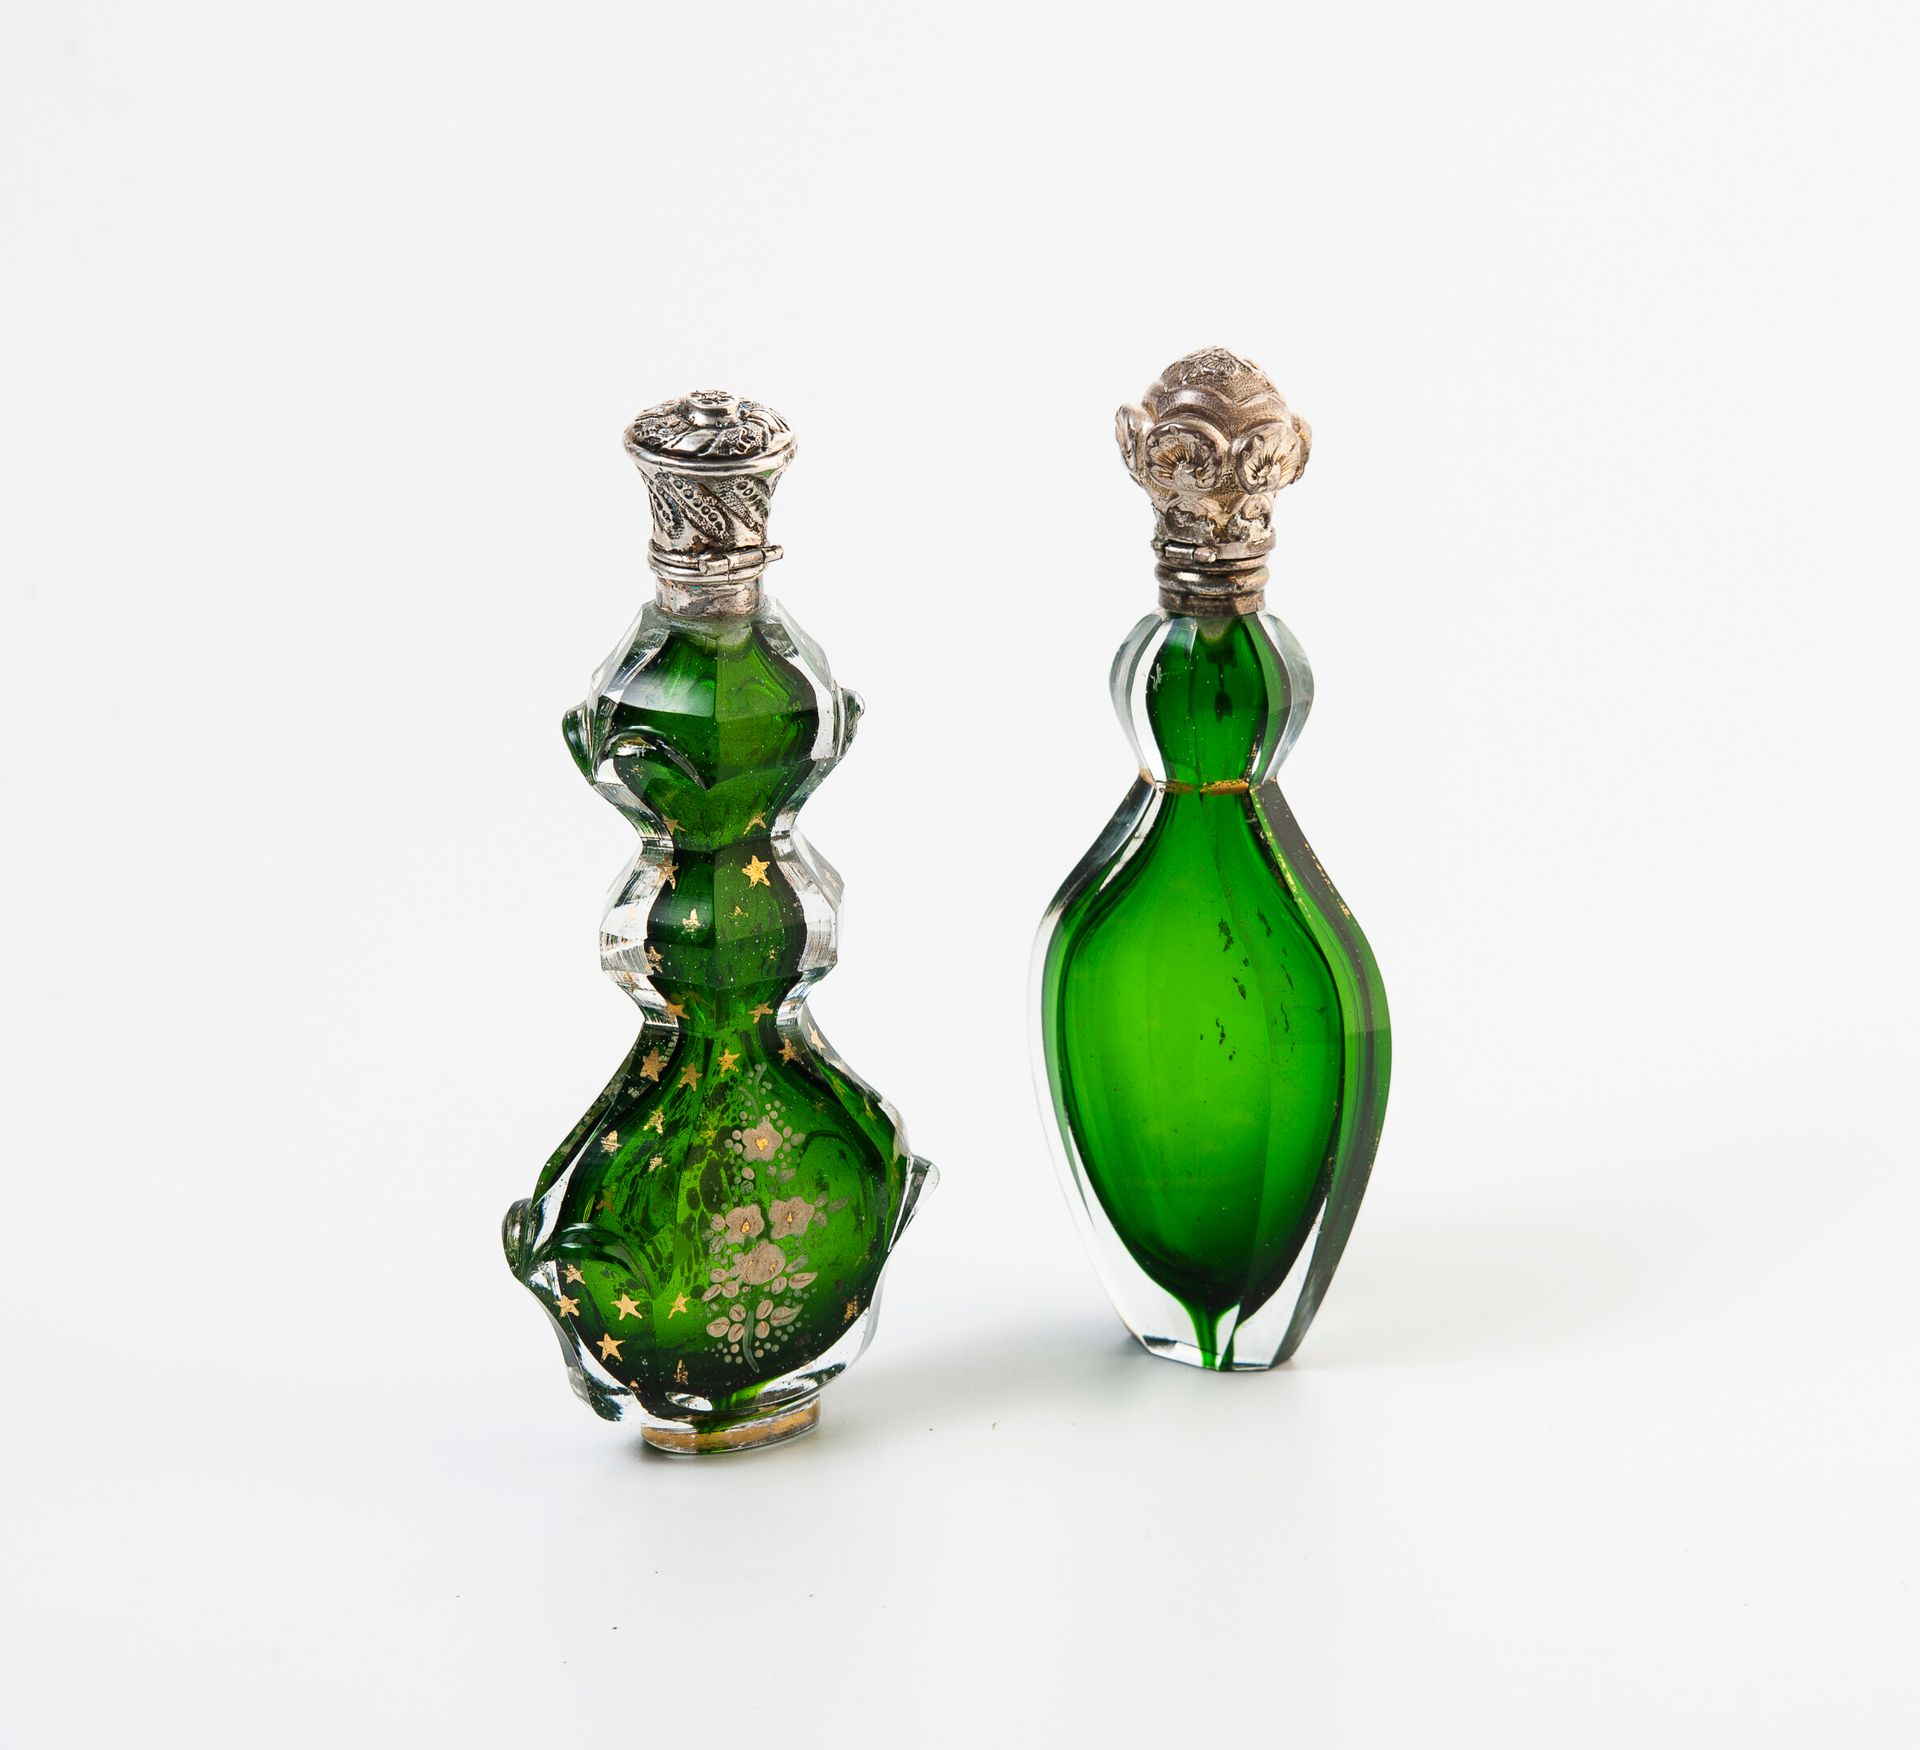 FRANCE, seconde moitié du XIXème siècle 两件盐瓶，无色水晶体（内衬），绿色内壁，一件装饰有半金星和白色花枝，另一件装饰有&hellip;